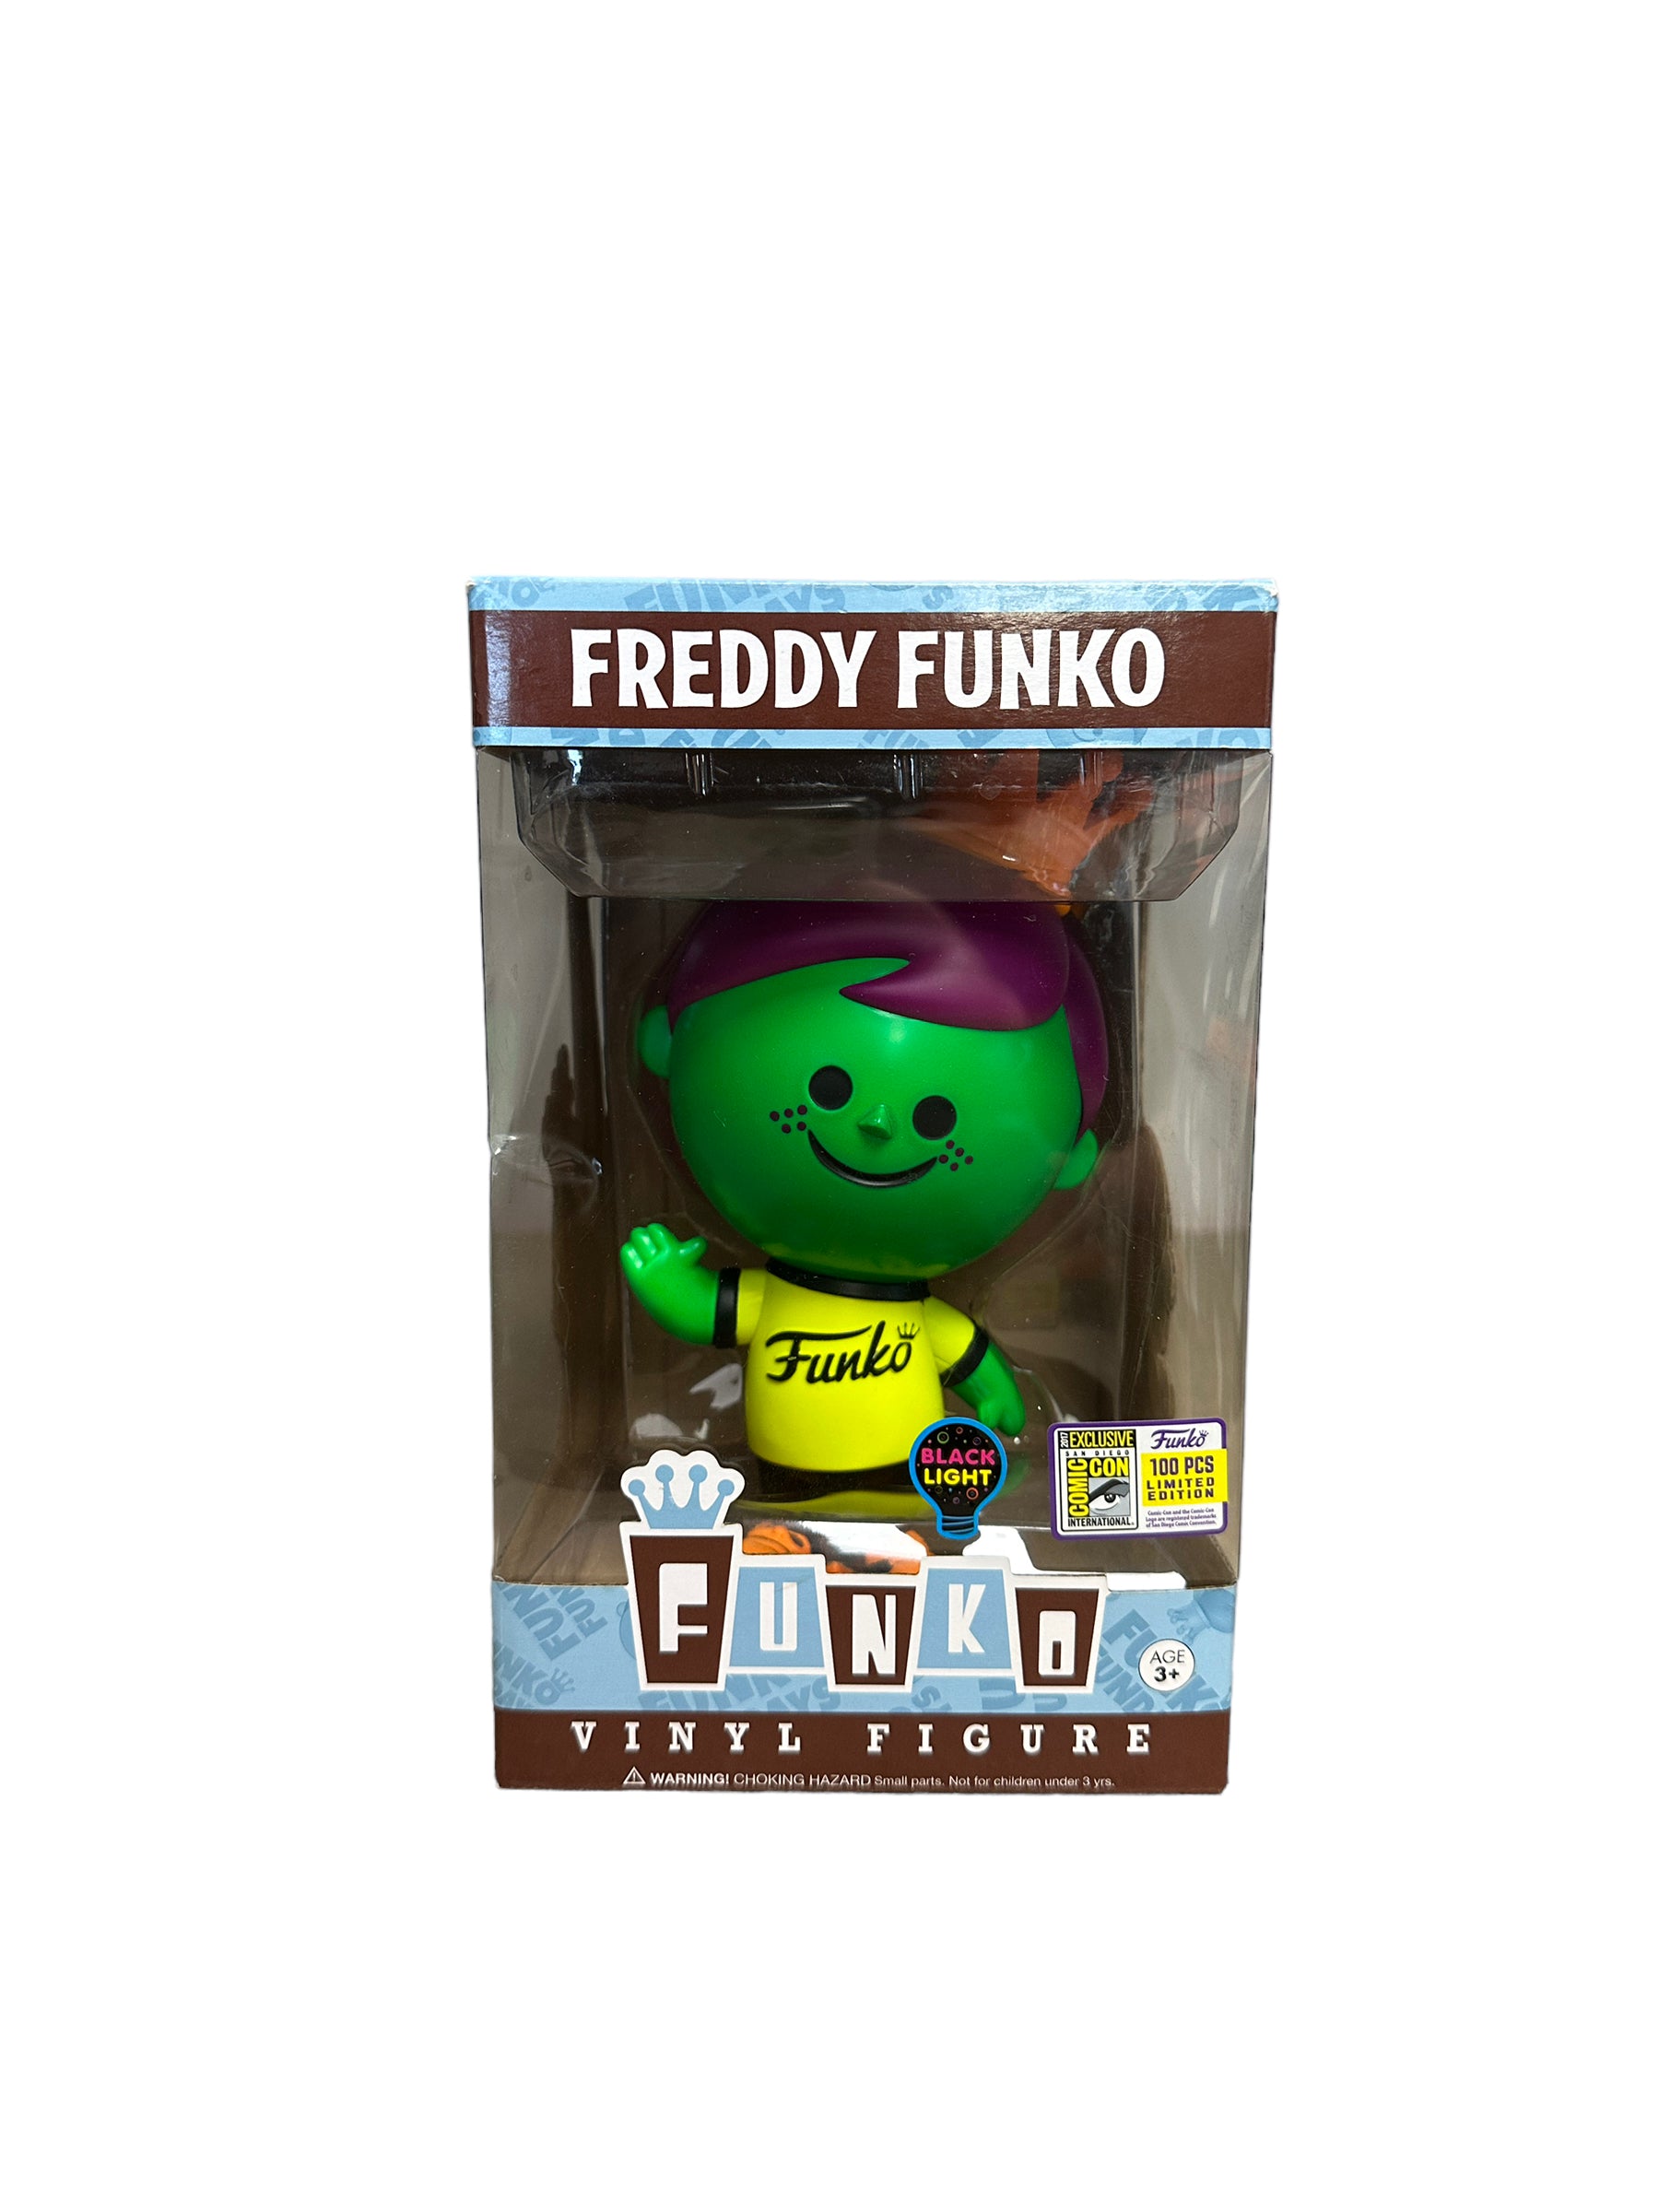 Freddy Funko Black Light (Green & Purple) Retro Vinyl Figure! - SDCC 2017 Exclusive LE100 Pcs - Condition 7/10